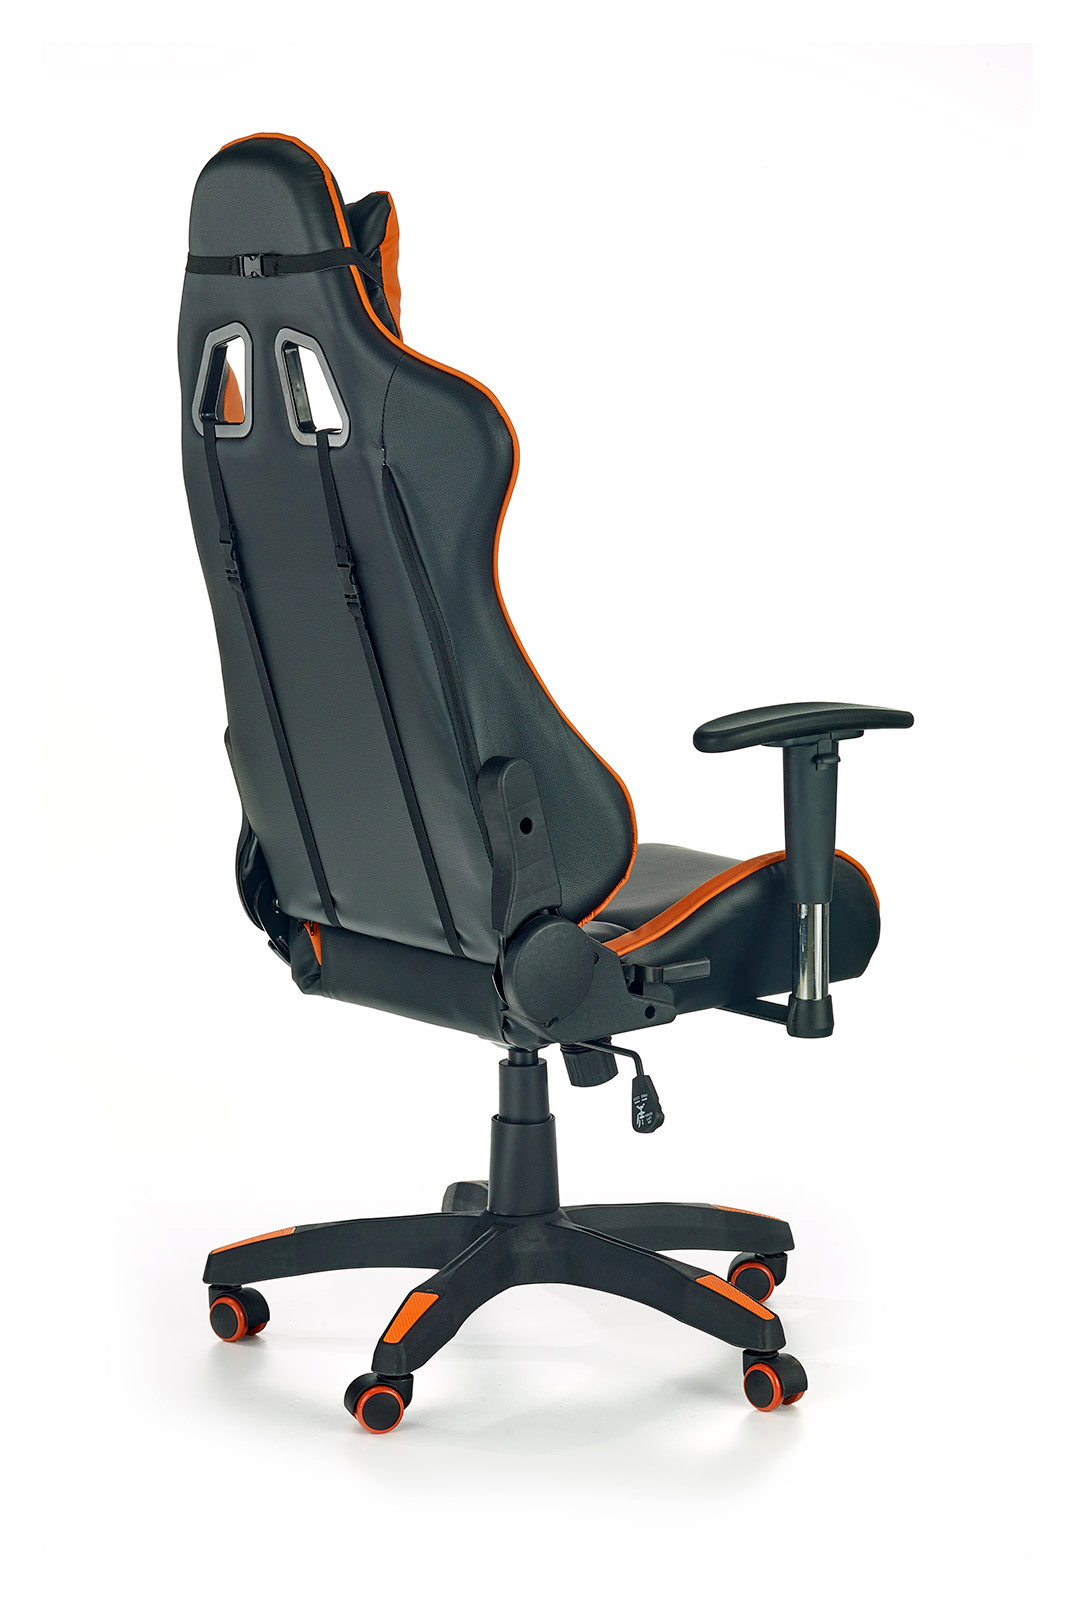 Кресло офисное PL- HALMAR DEFENDER-2 черно-оранжевый